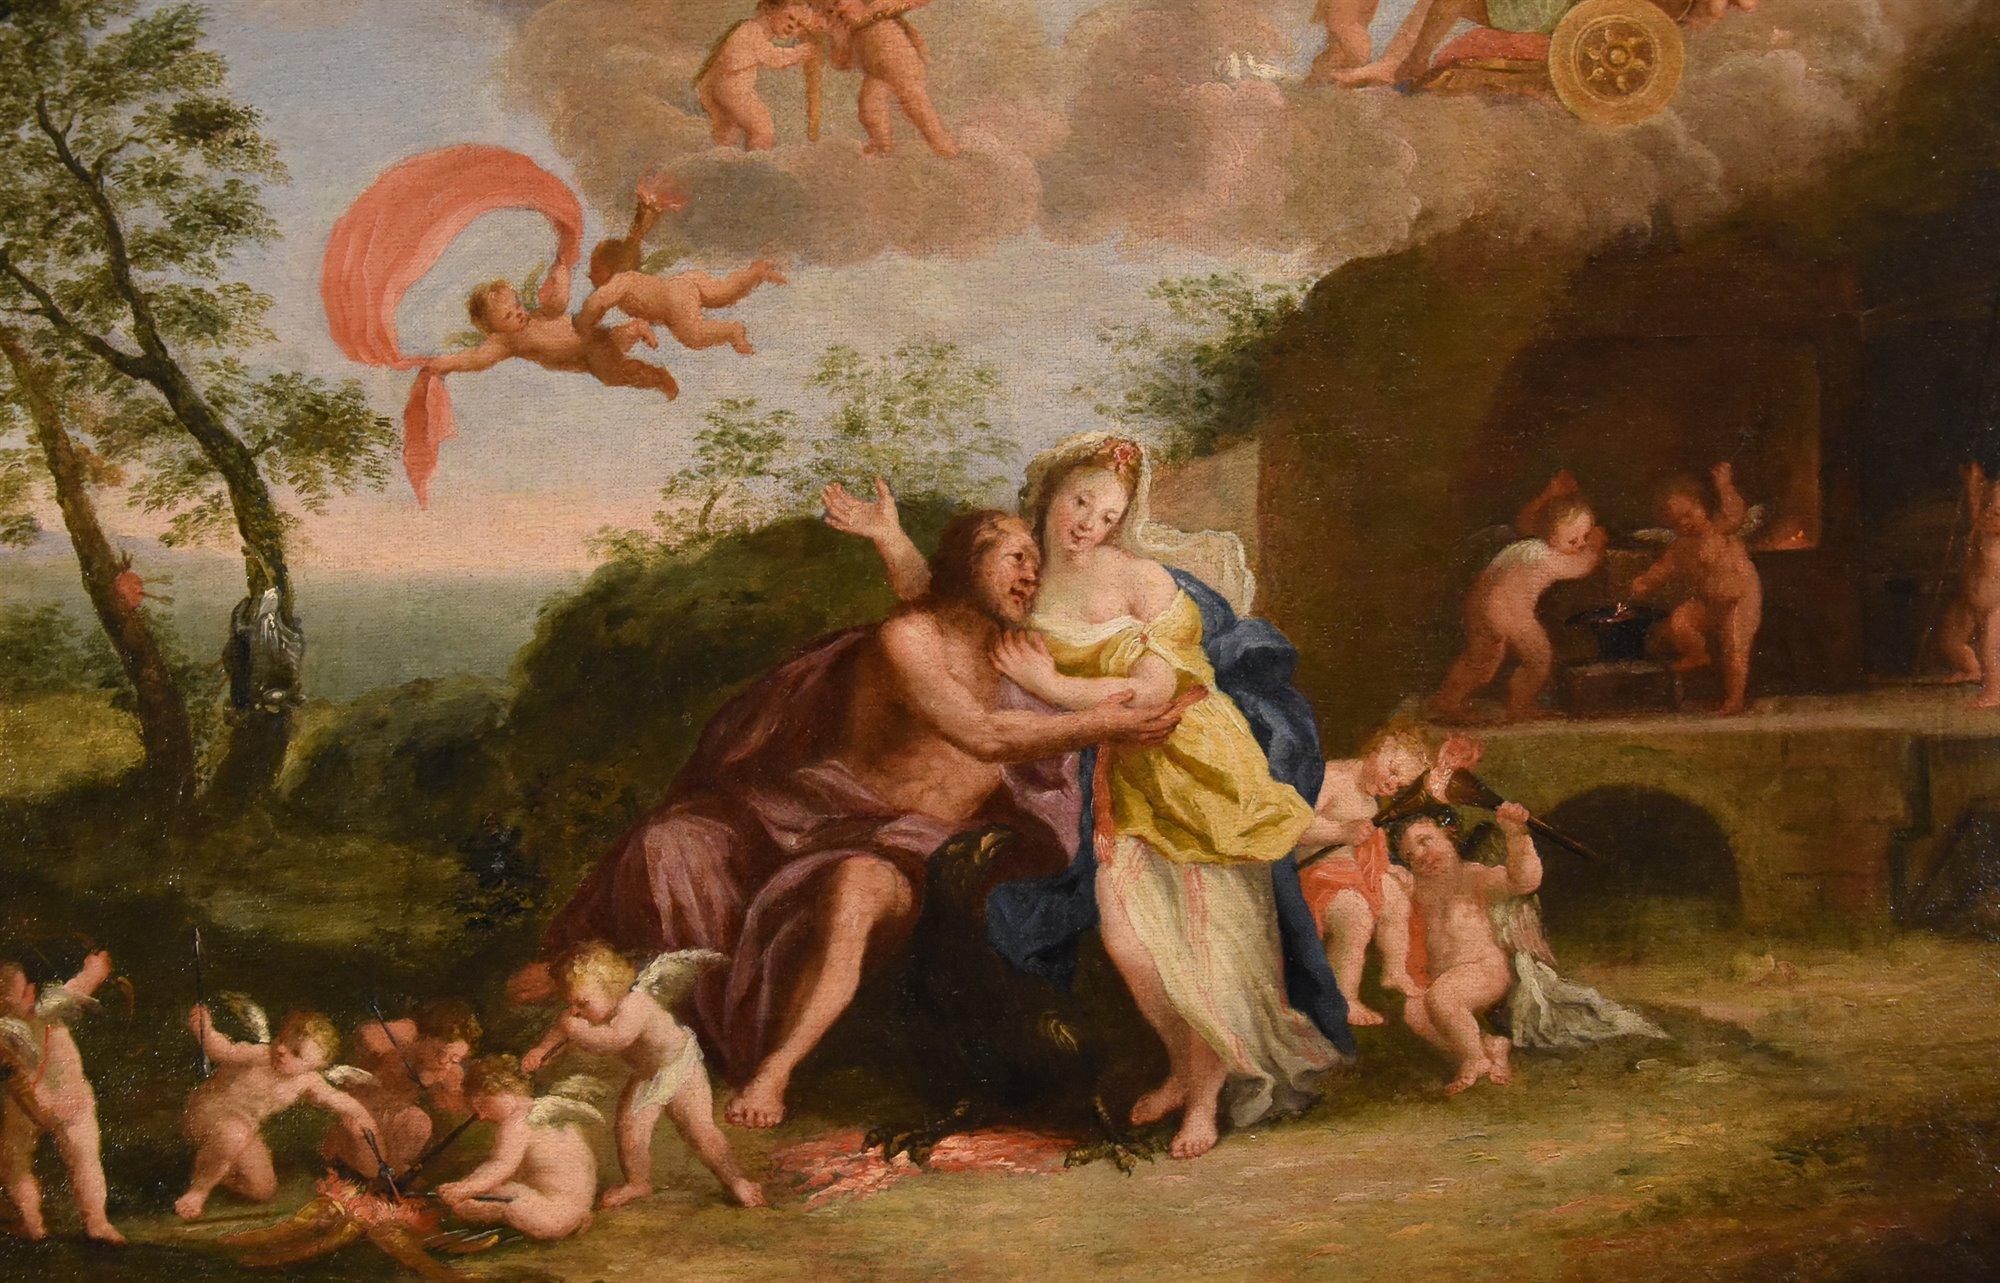 Mars Venus Albani Paint Oil on canvas 17th Century Old master Mythological For Sale 6